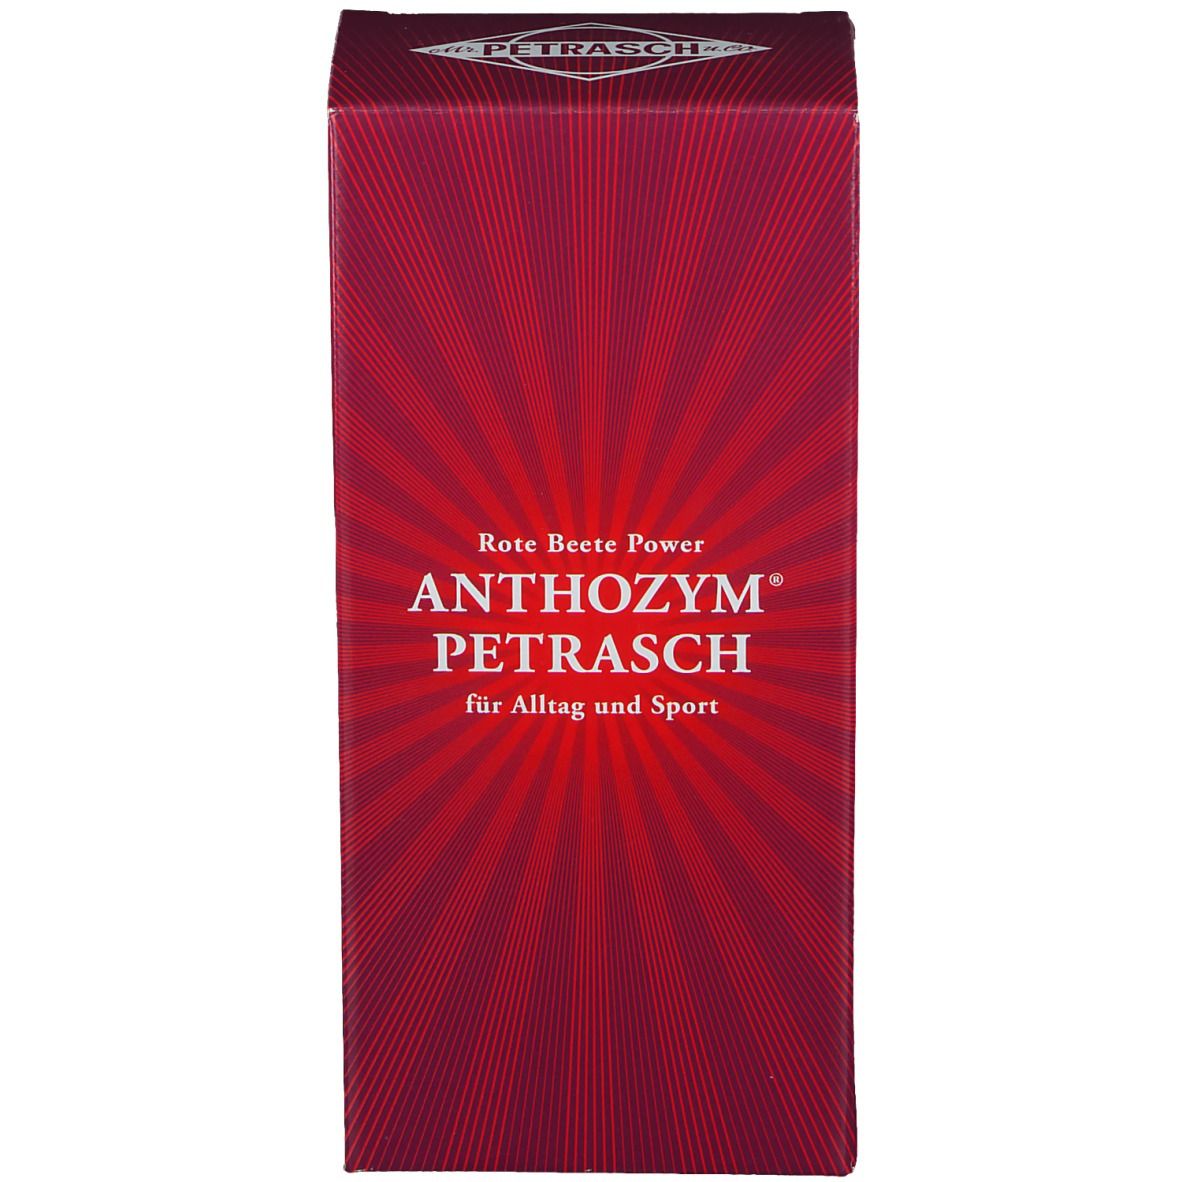 ANTHOZYM® PETRASCH alkoholfrei